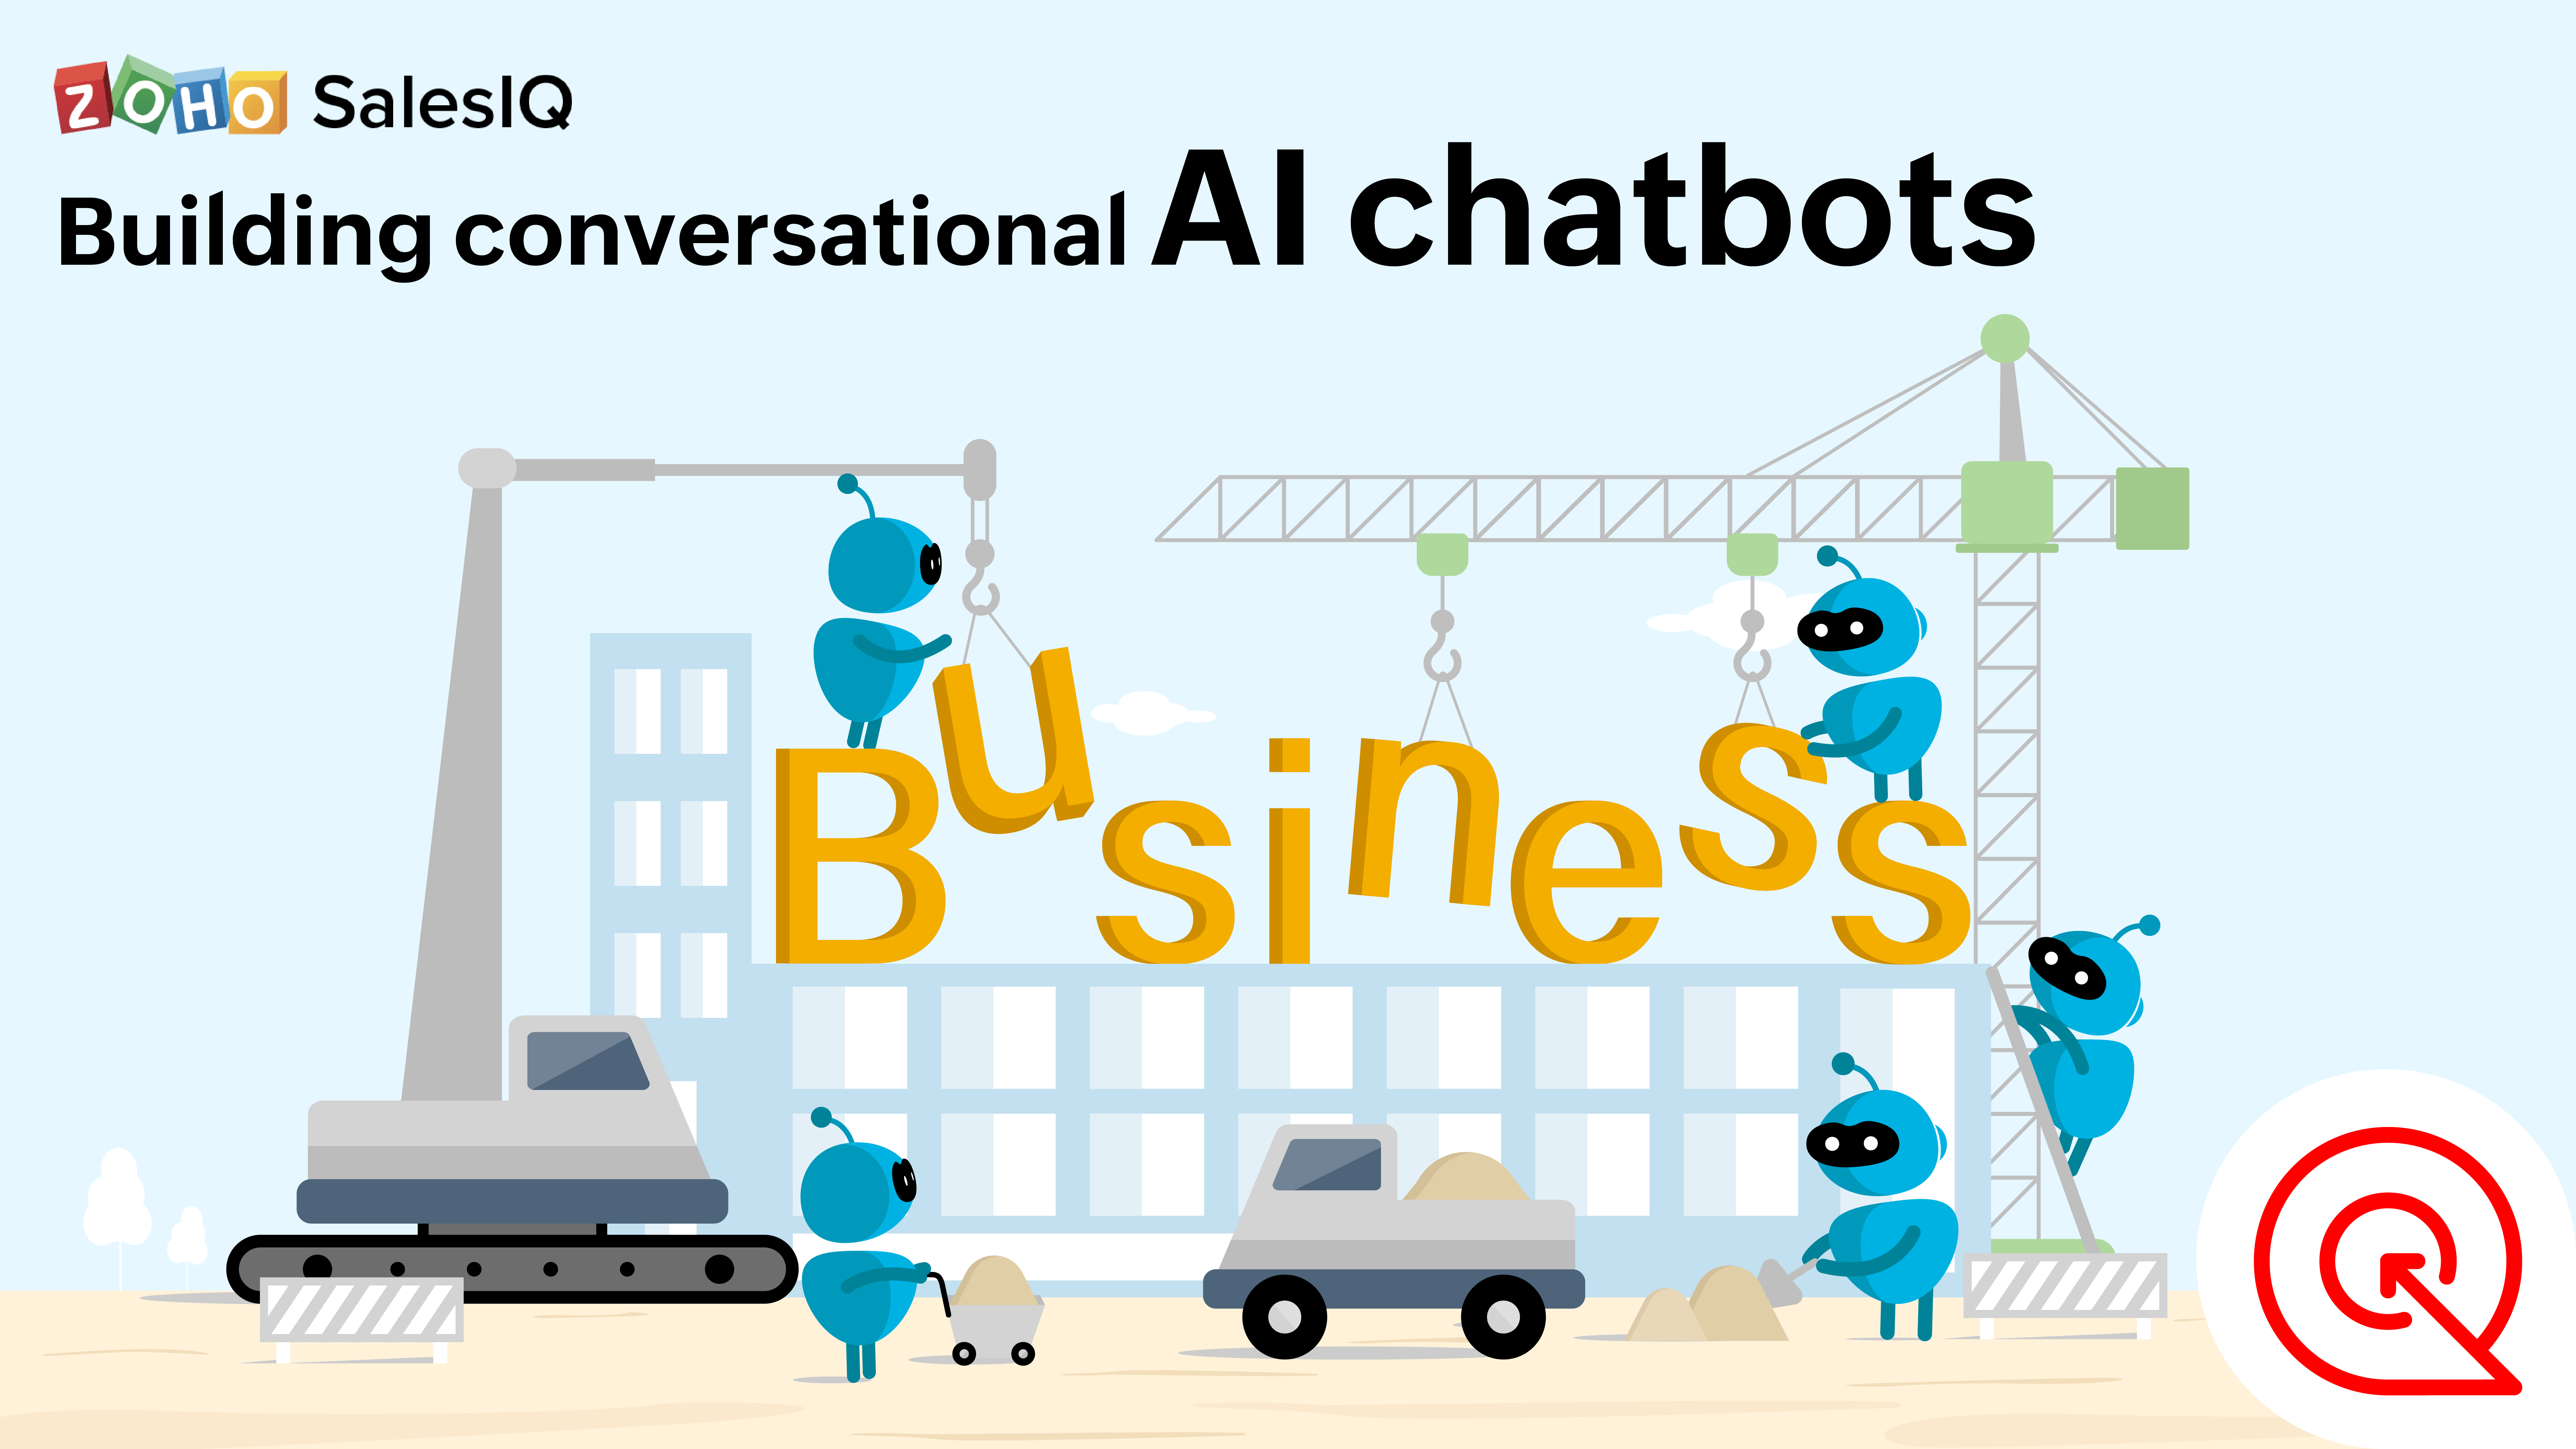 Building conversational chatbots